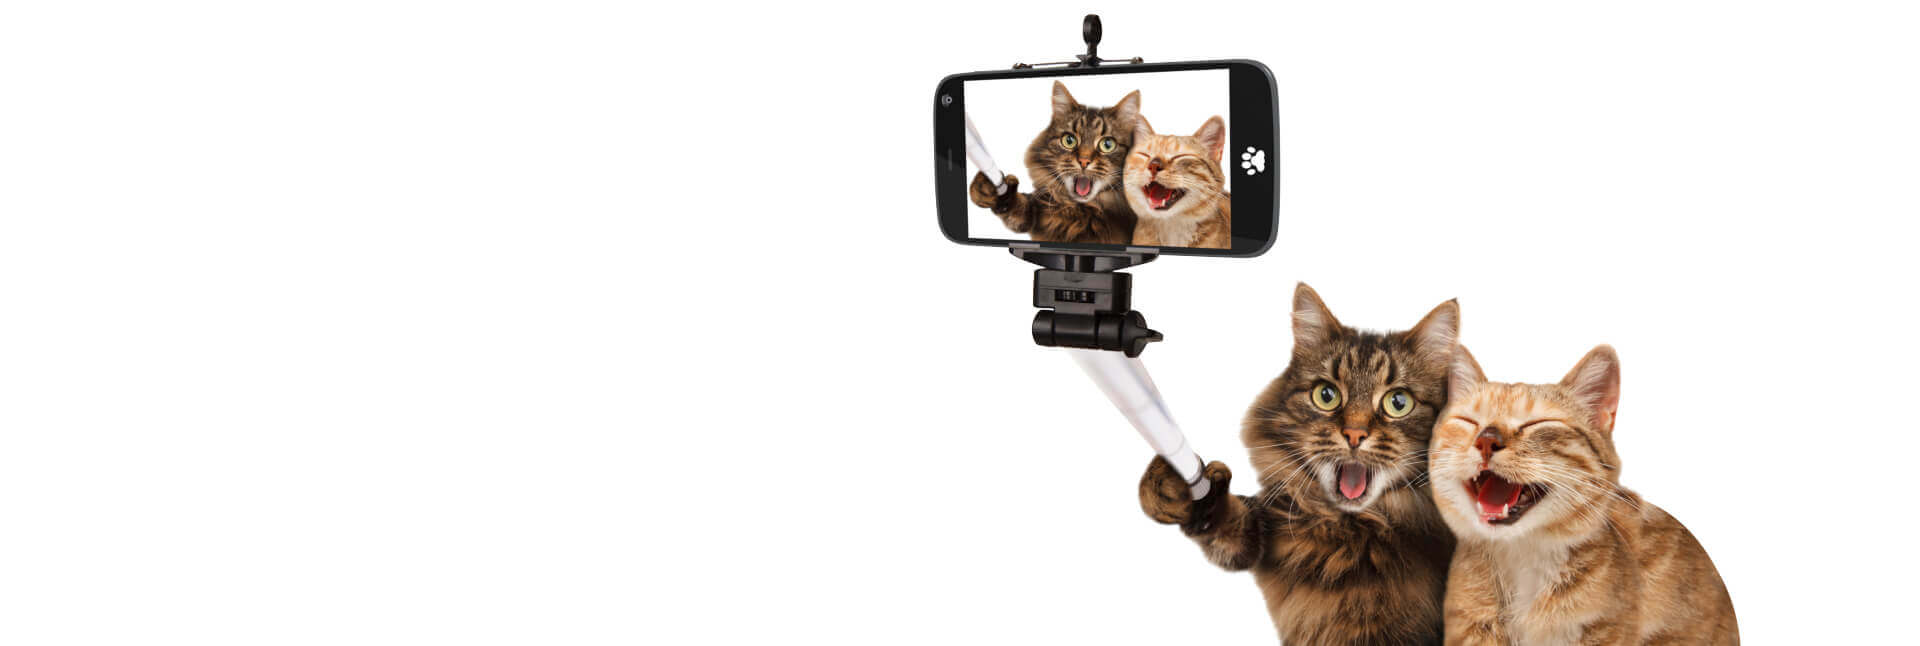 cats taking selfie